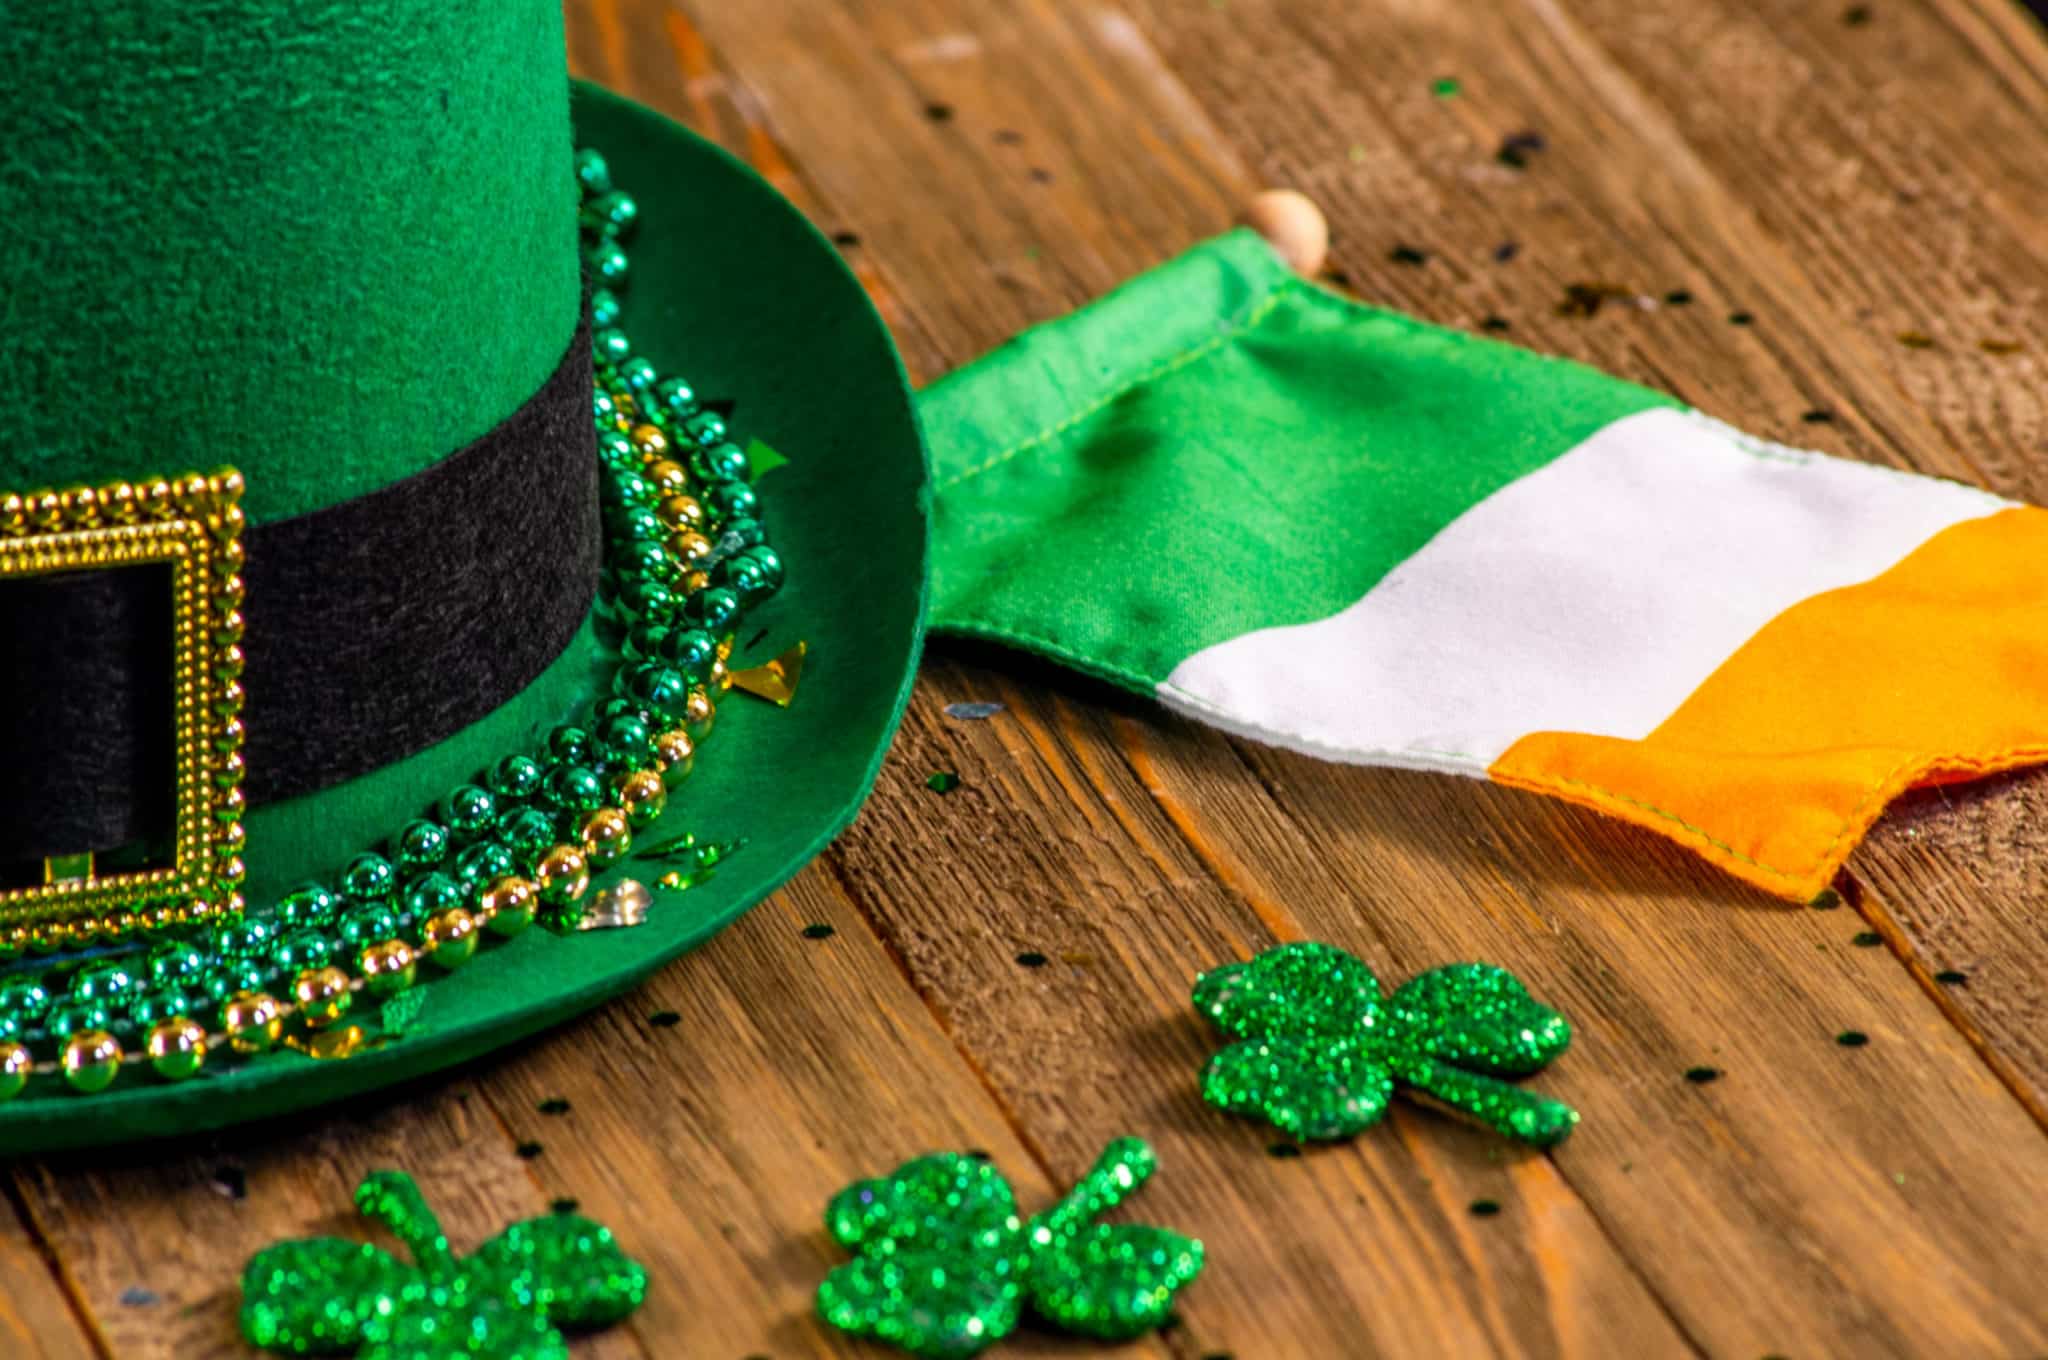 Articles sur le thème de la Saint-Patrick, tels qu'un chapeau vert, un drapeau irlandais et des trèfles scintillants.